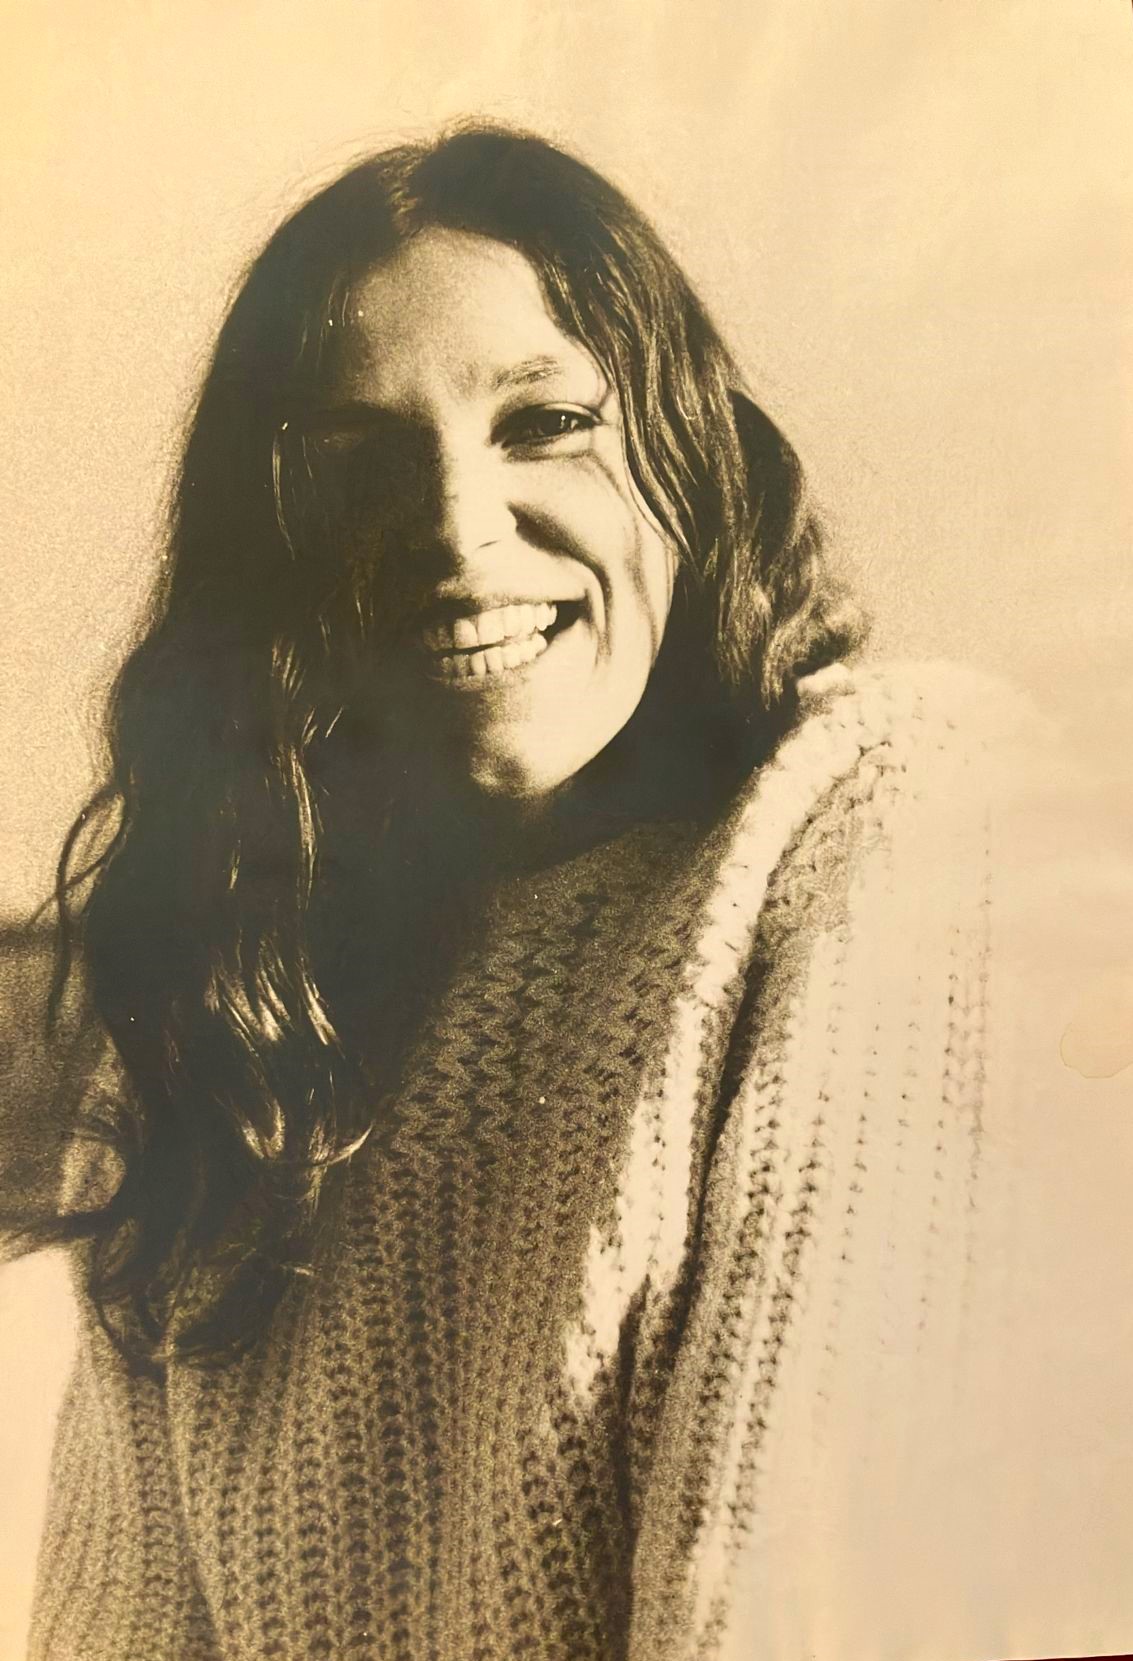 Yvonne Scholten negli anni Settanta (Fonte: Archivio privato Yvonne Scholten, per gentile concessione)